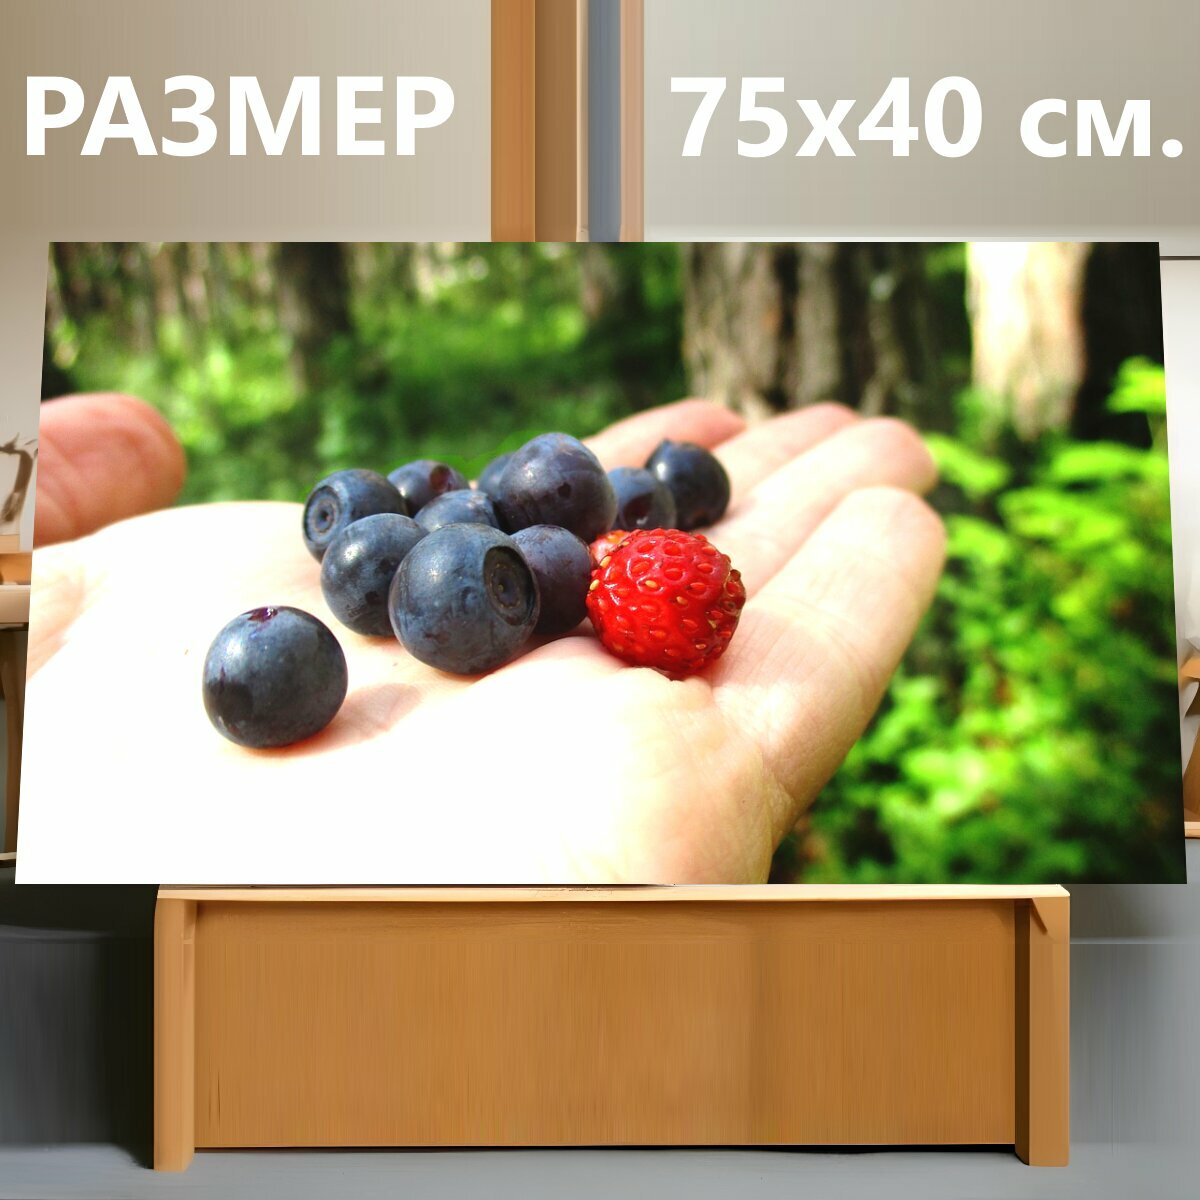 Картина на холсте "Черника, клубника, ягоды" на подрамнике 75х40 см. для интерьера